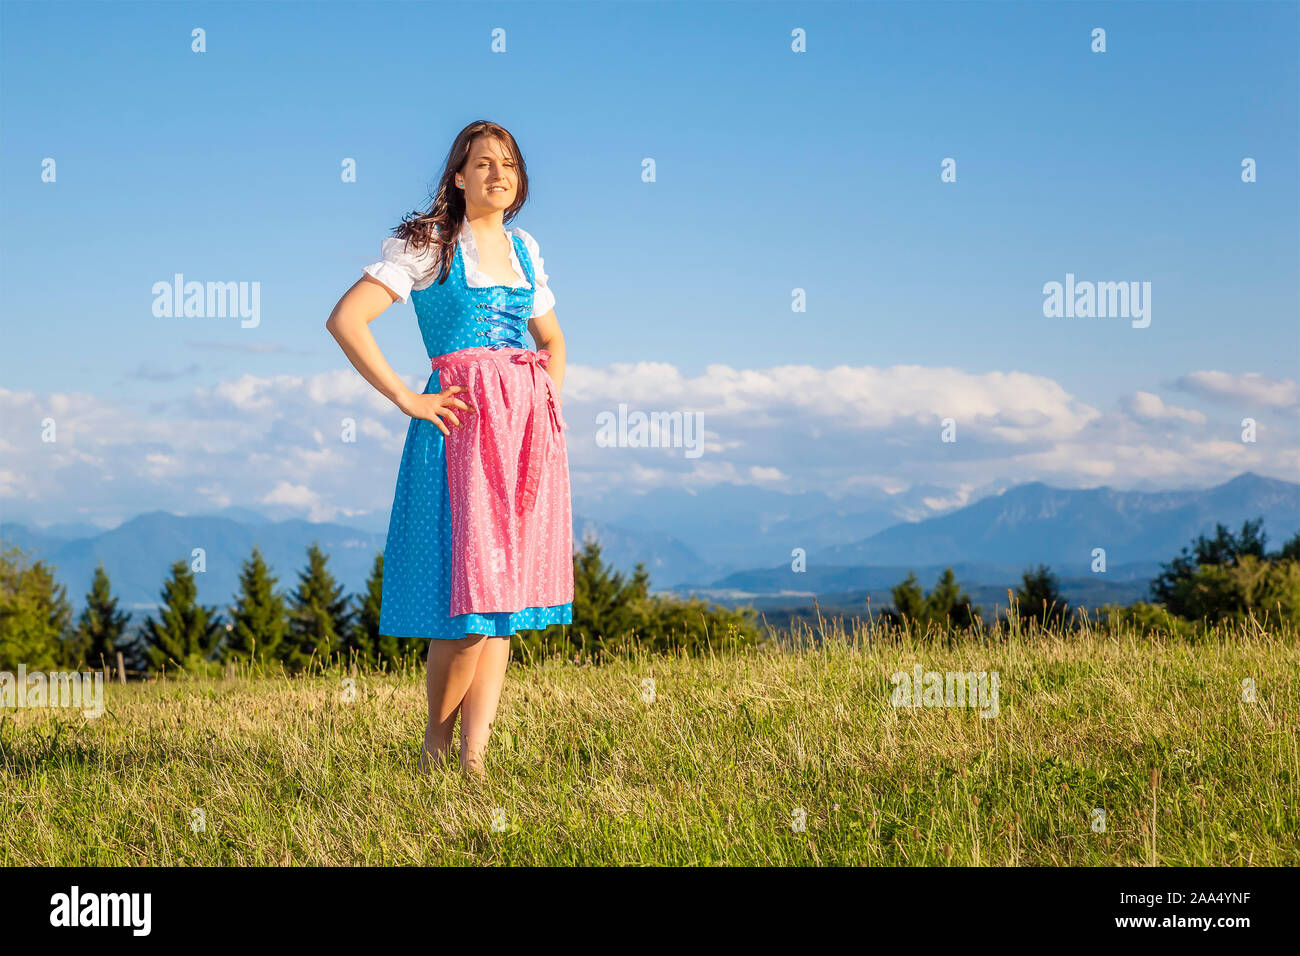 Eine hübsche junge Frau, die ein klassisches bayerisches Trachtengewand traegt Stock Photo